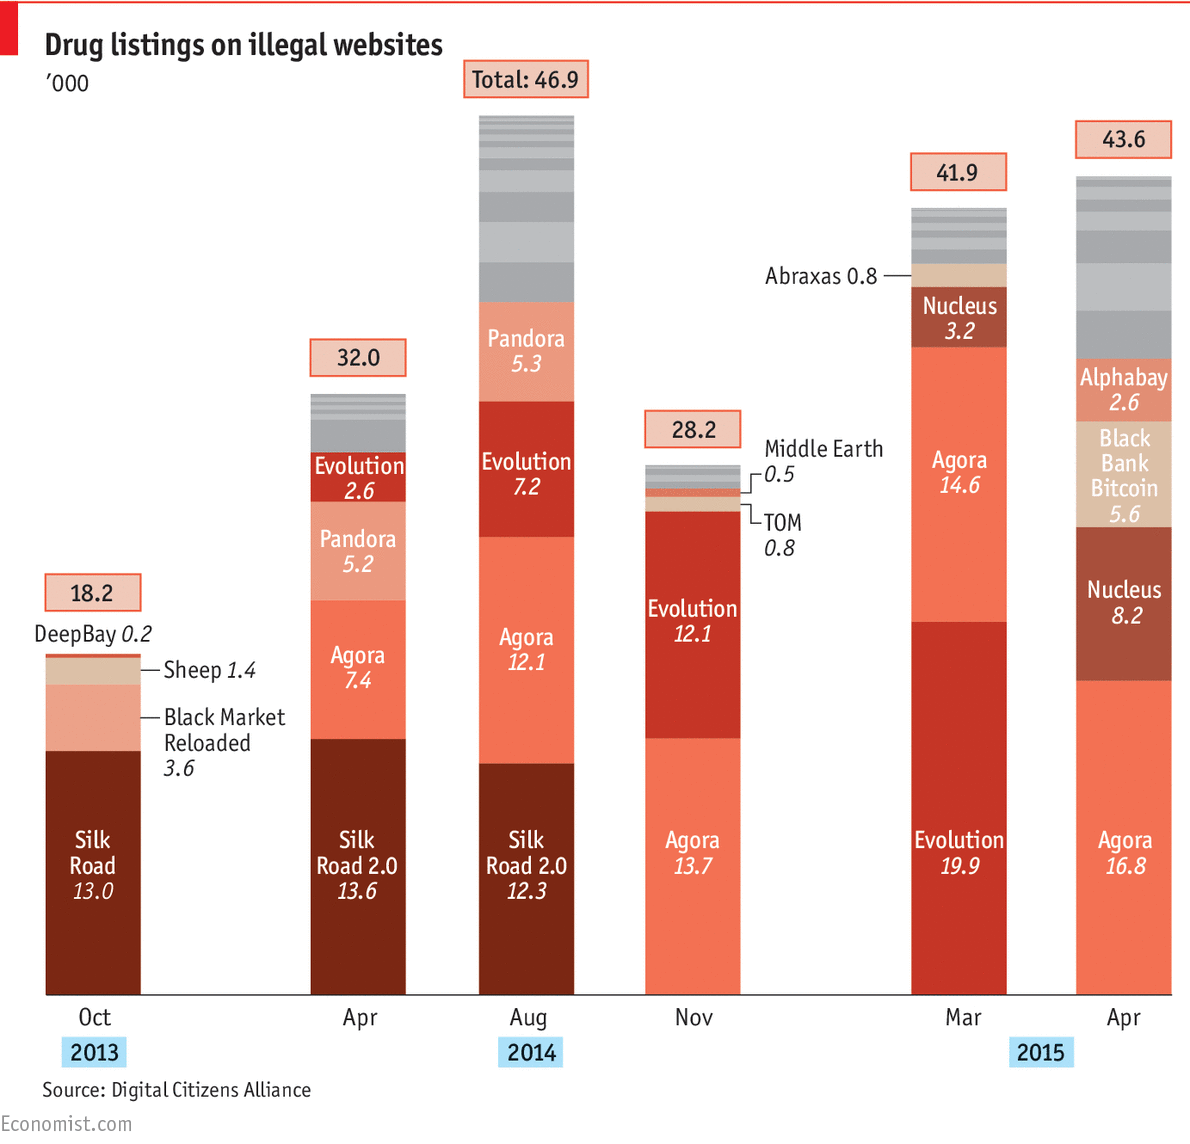 Dark web drug markets